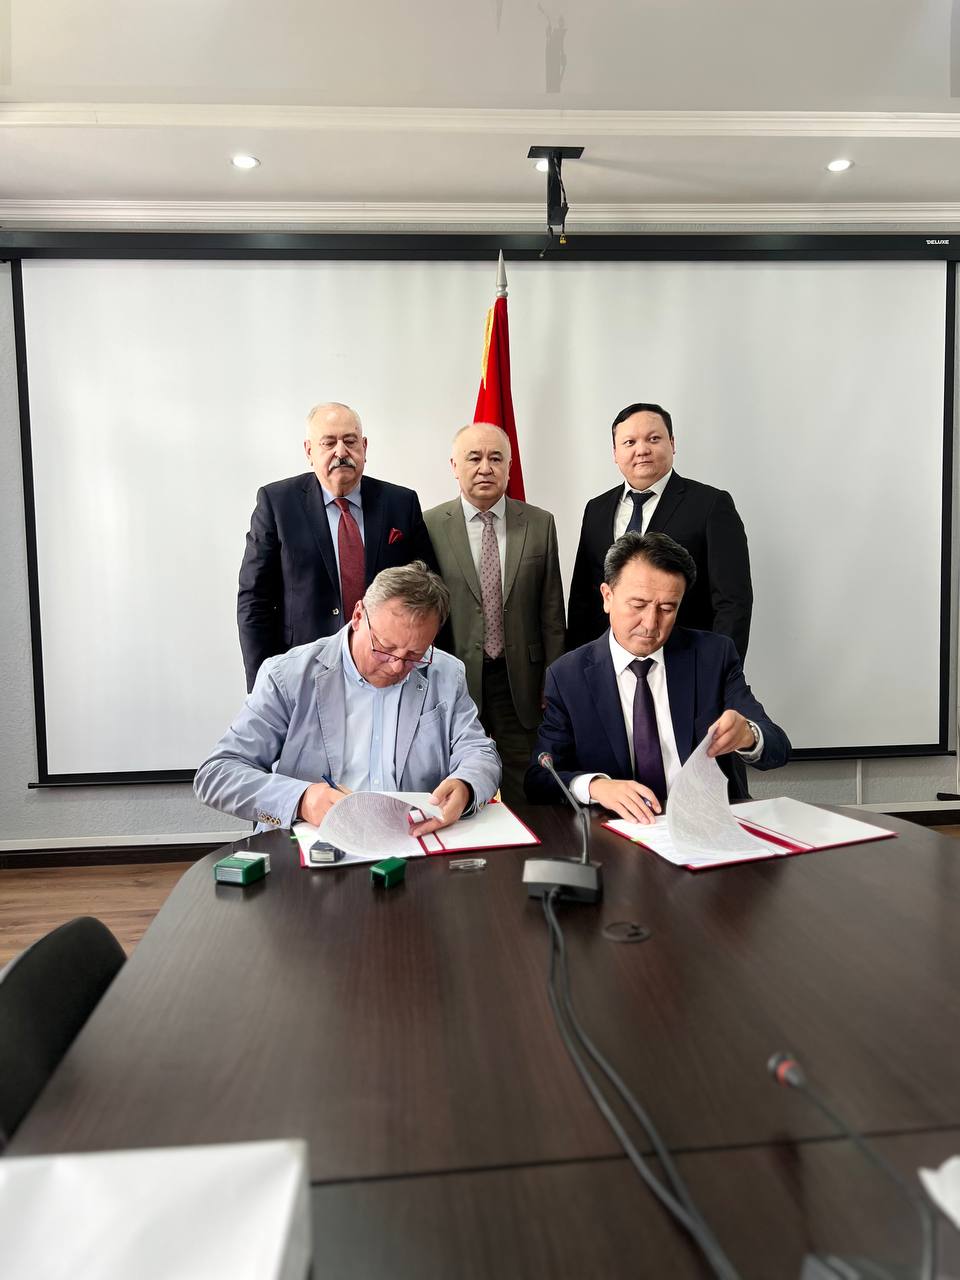 Сегодня состоялось подписание Соглашения между Центром трудоустройства граждан за рубежом при Министерстве труда, социального обеспечения и миграции КР и польской компании "EUROKADRA SA"